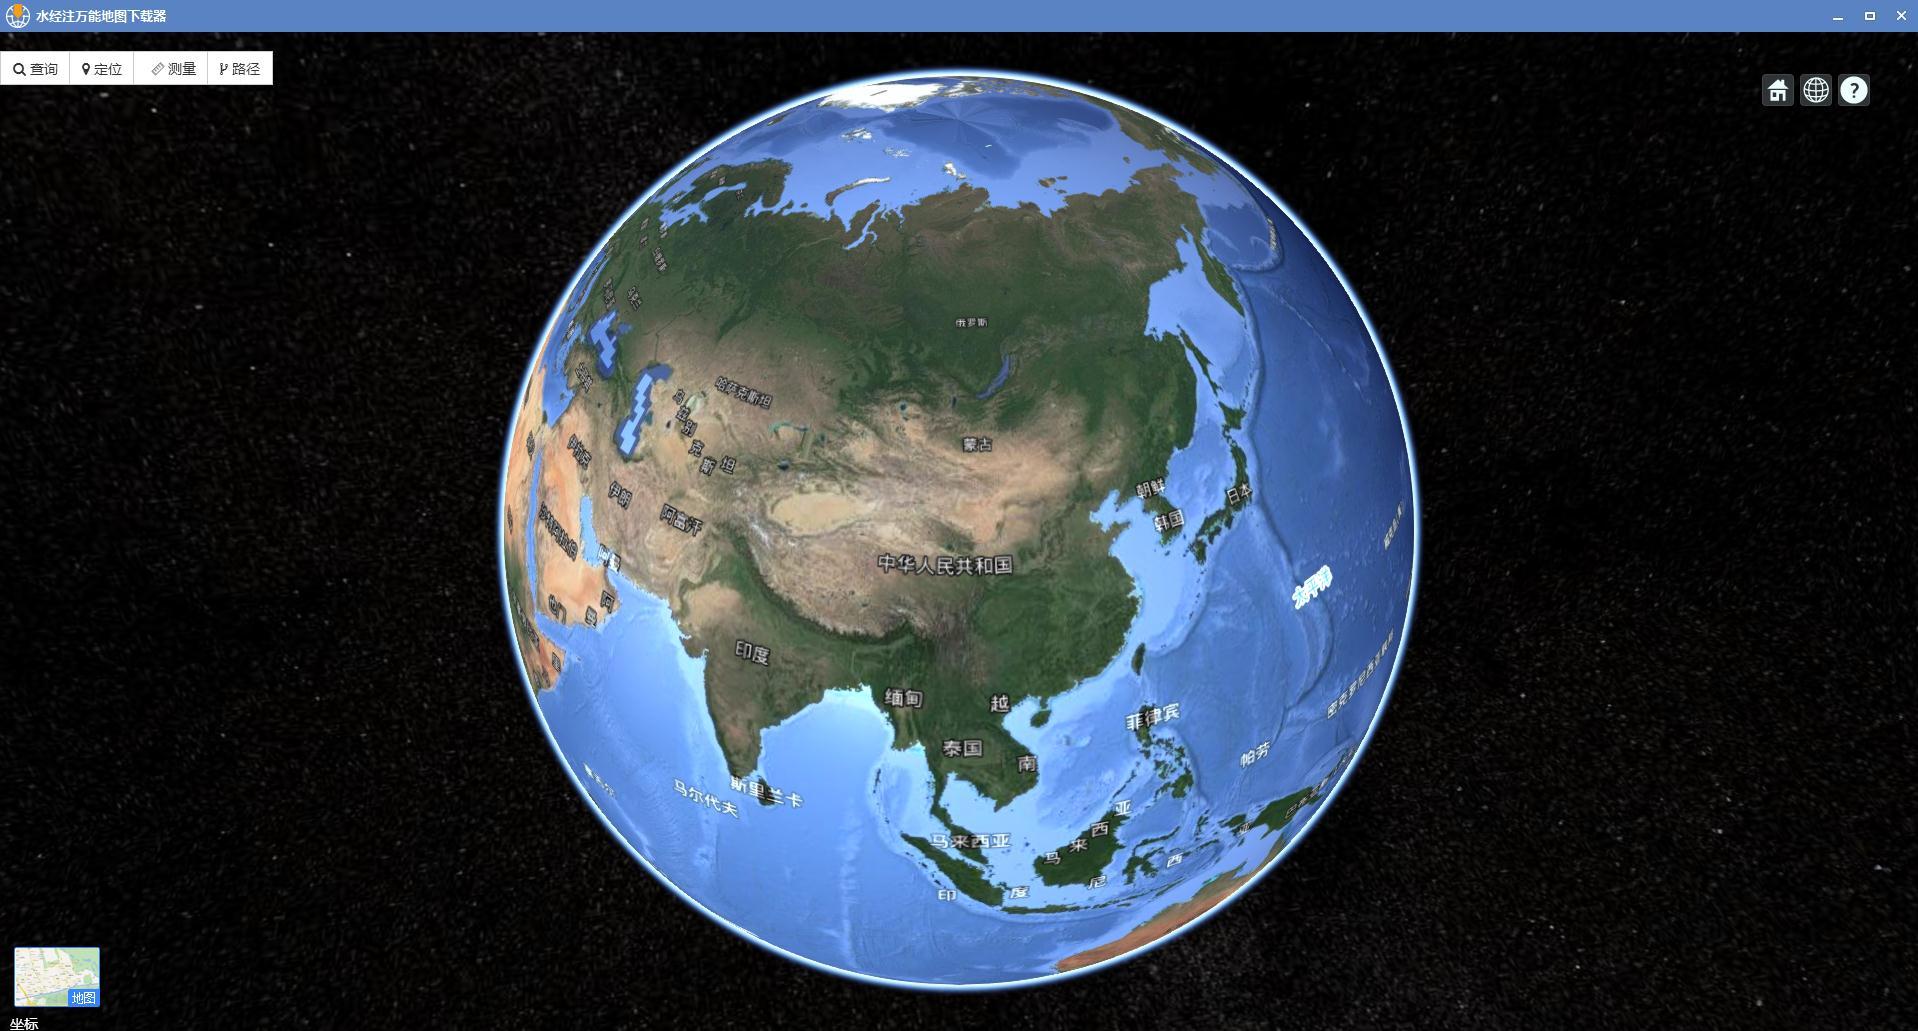 麦哲伦环球航行证明了地球是圆的，朝着一个方向走能回到原点吗？